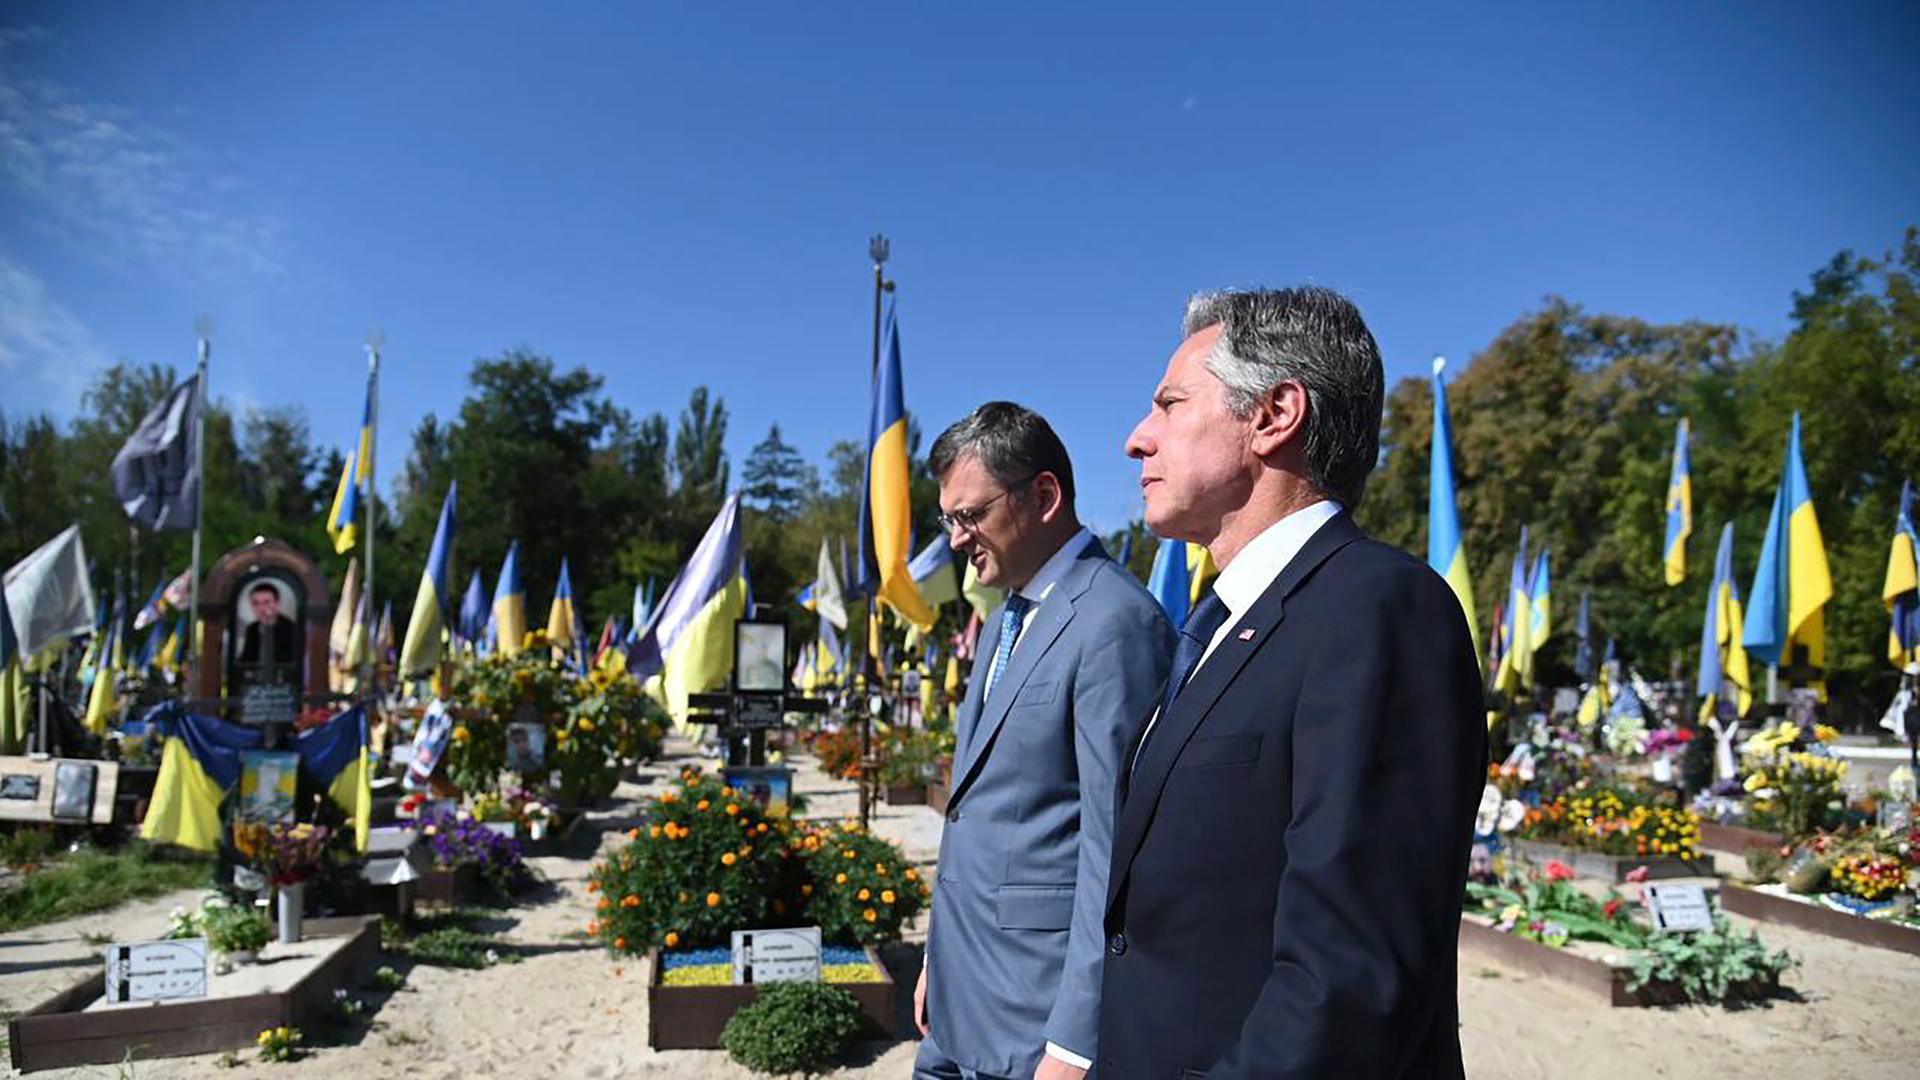 Zwei Männer in Anzügen stehen auf einem Soldatenfriedhof, im Hintergrund sind Gräber mit ukrainischen Flaggen und Blumen zu sehen.